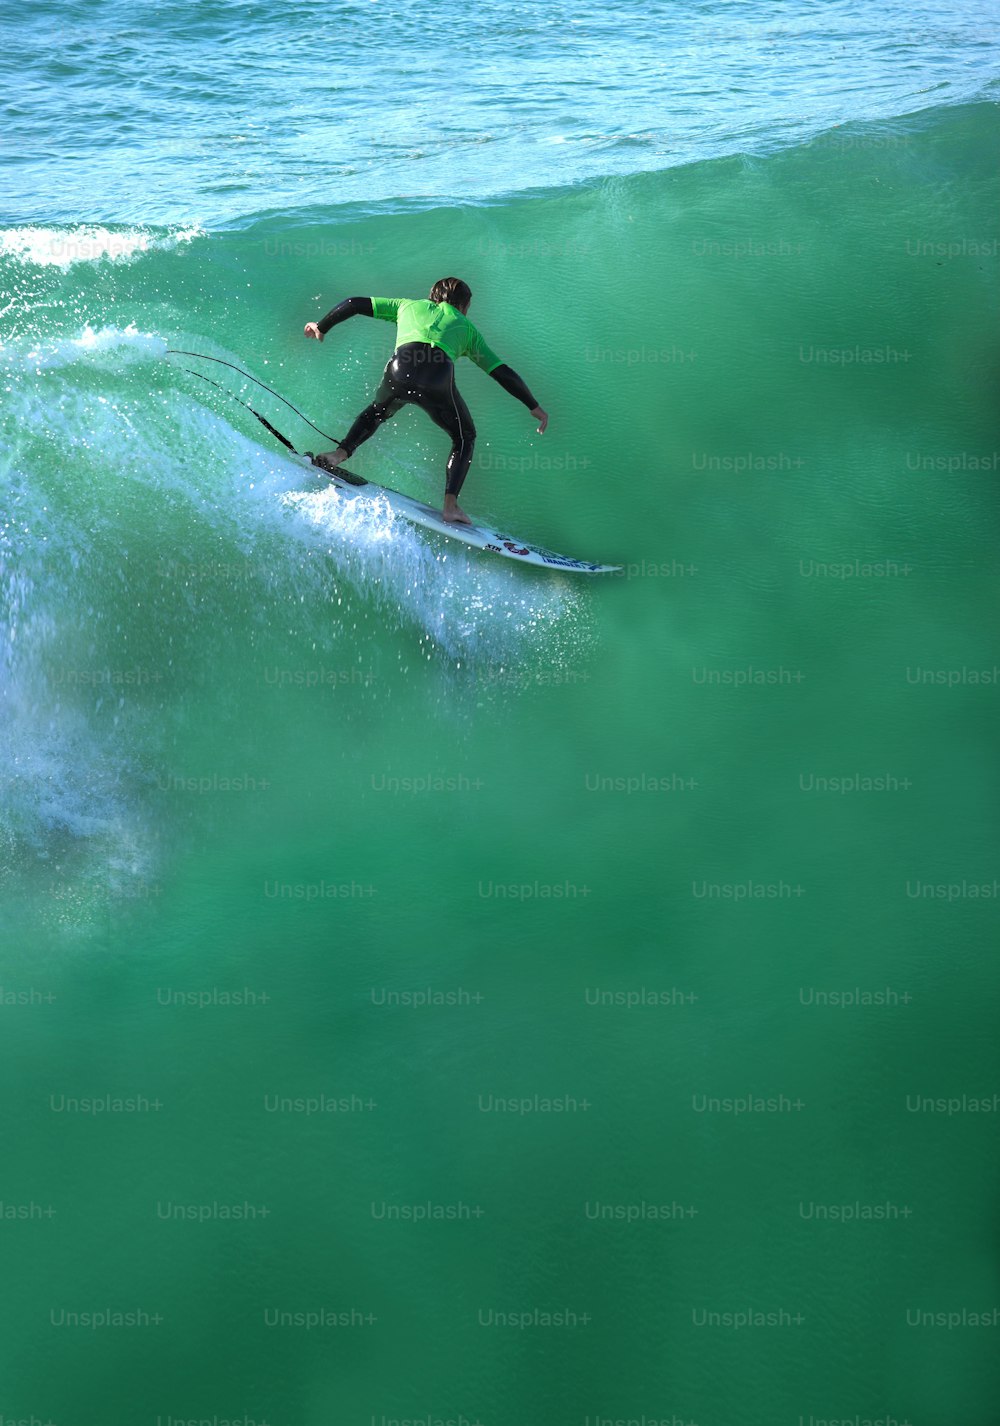 Um surfista pegando uma onda